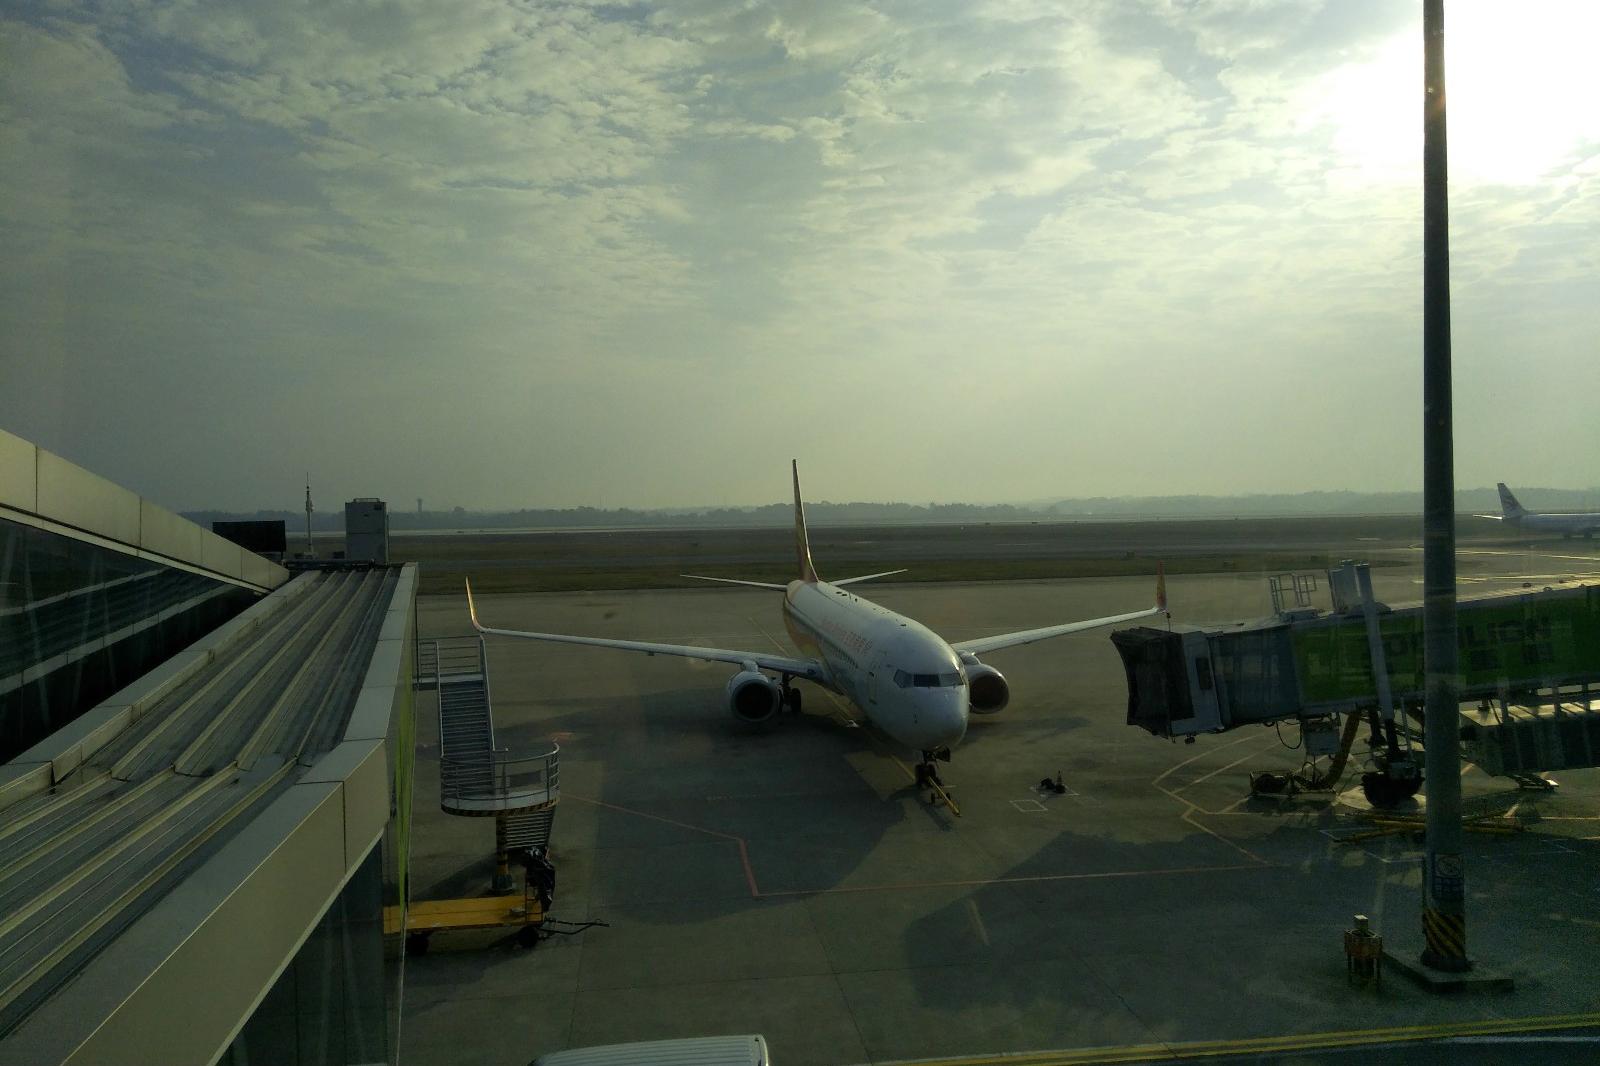 长沙黄花机场近距离实拍, 与飞机的一次亲密接触, 让人怦然心动!